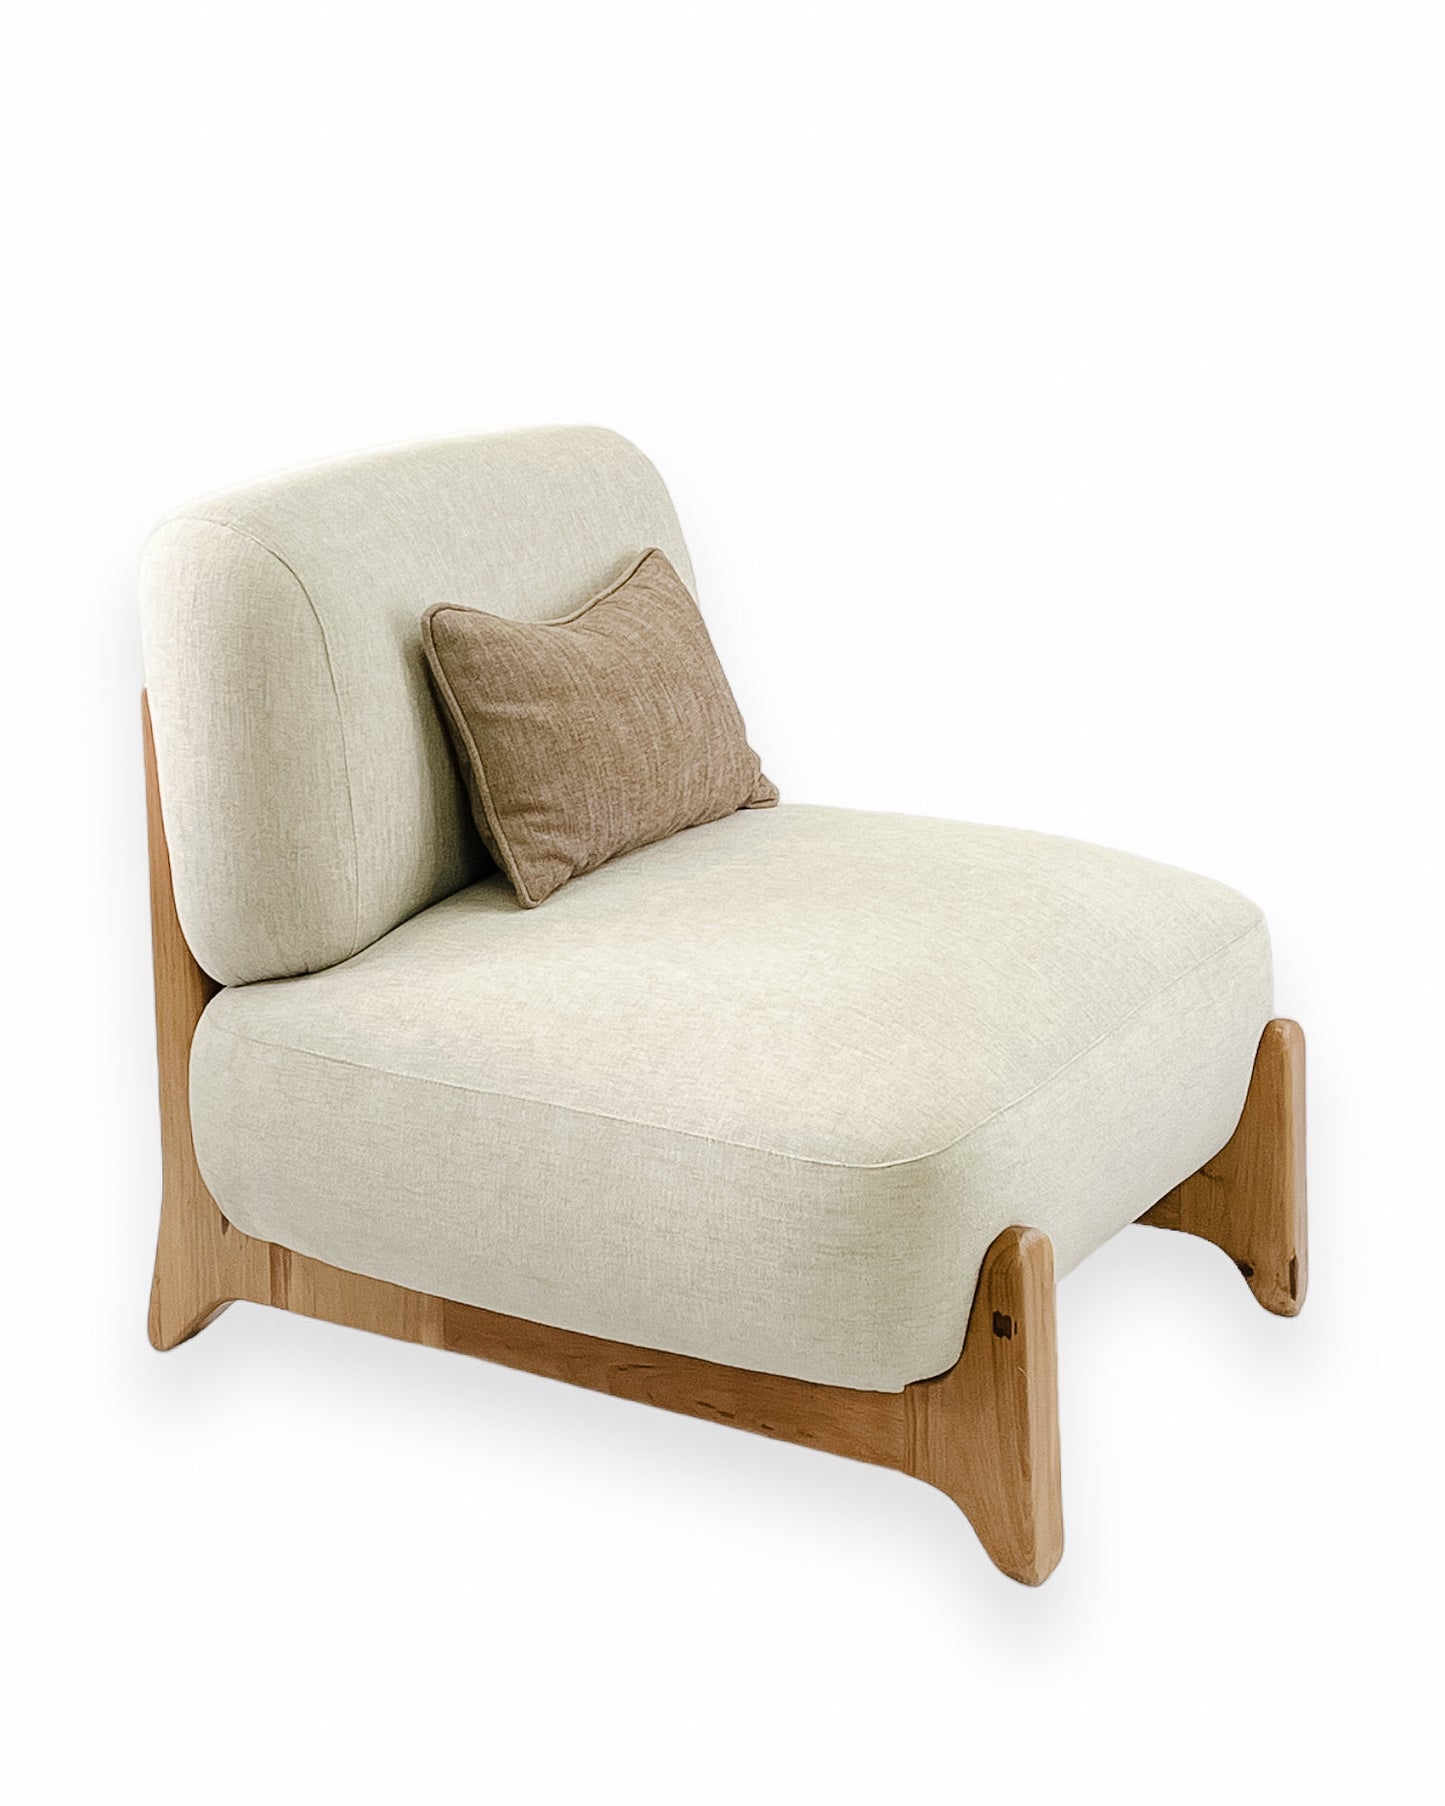 Tobo Lounge Chair